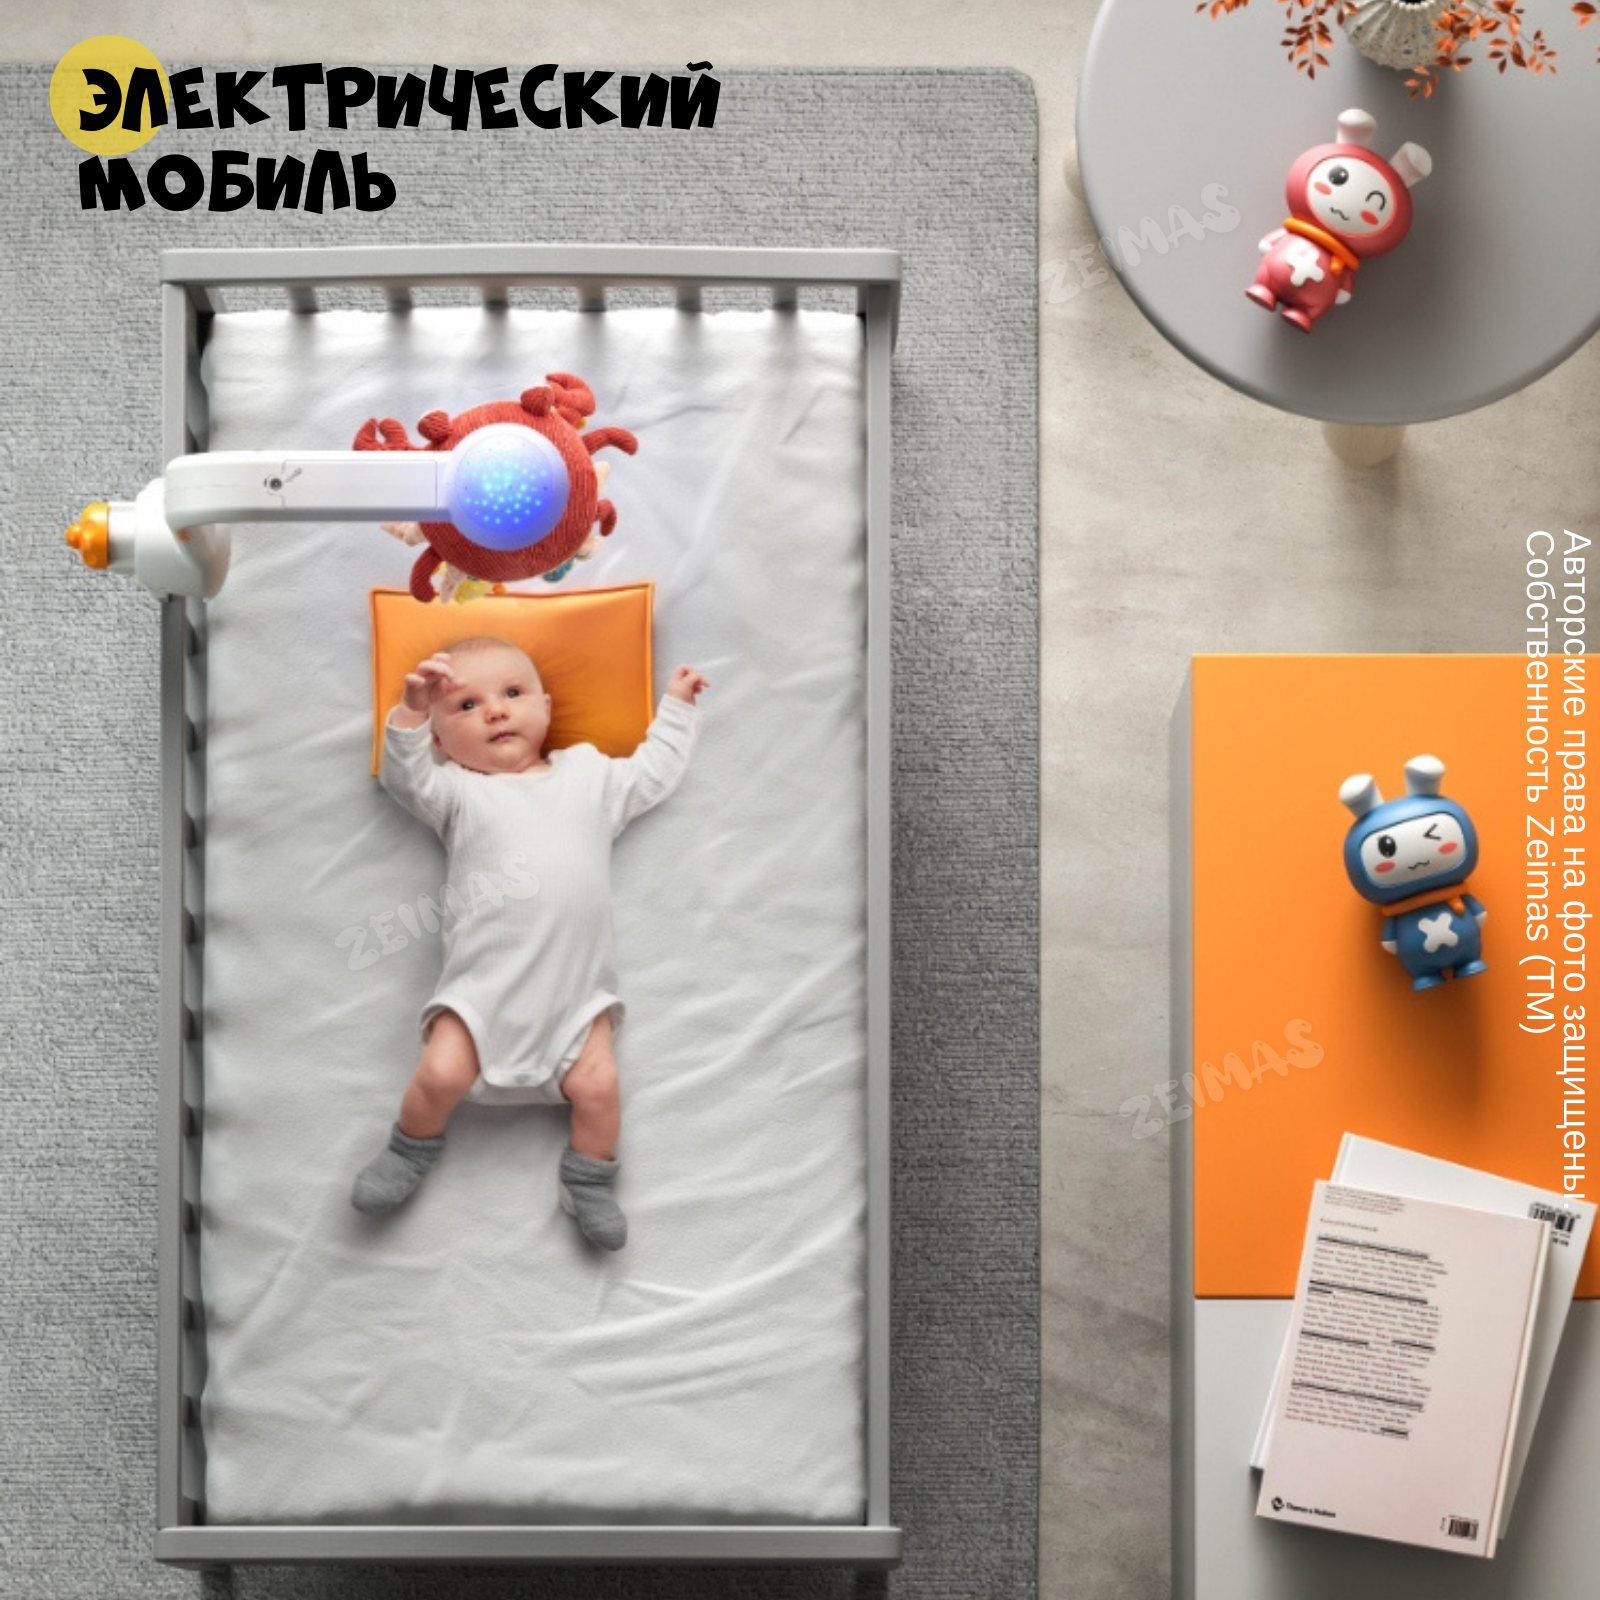 Музыкальный мобиль в кроватку Zeimas с bluetooth регулировкой громкости и проектором звездного неба развивающая игрушка - фото 13